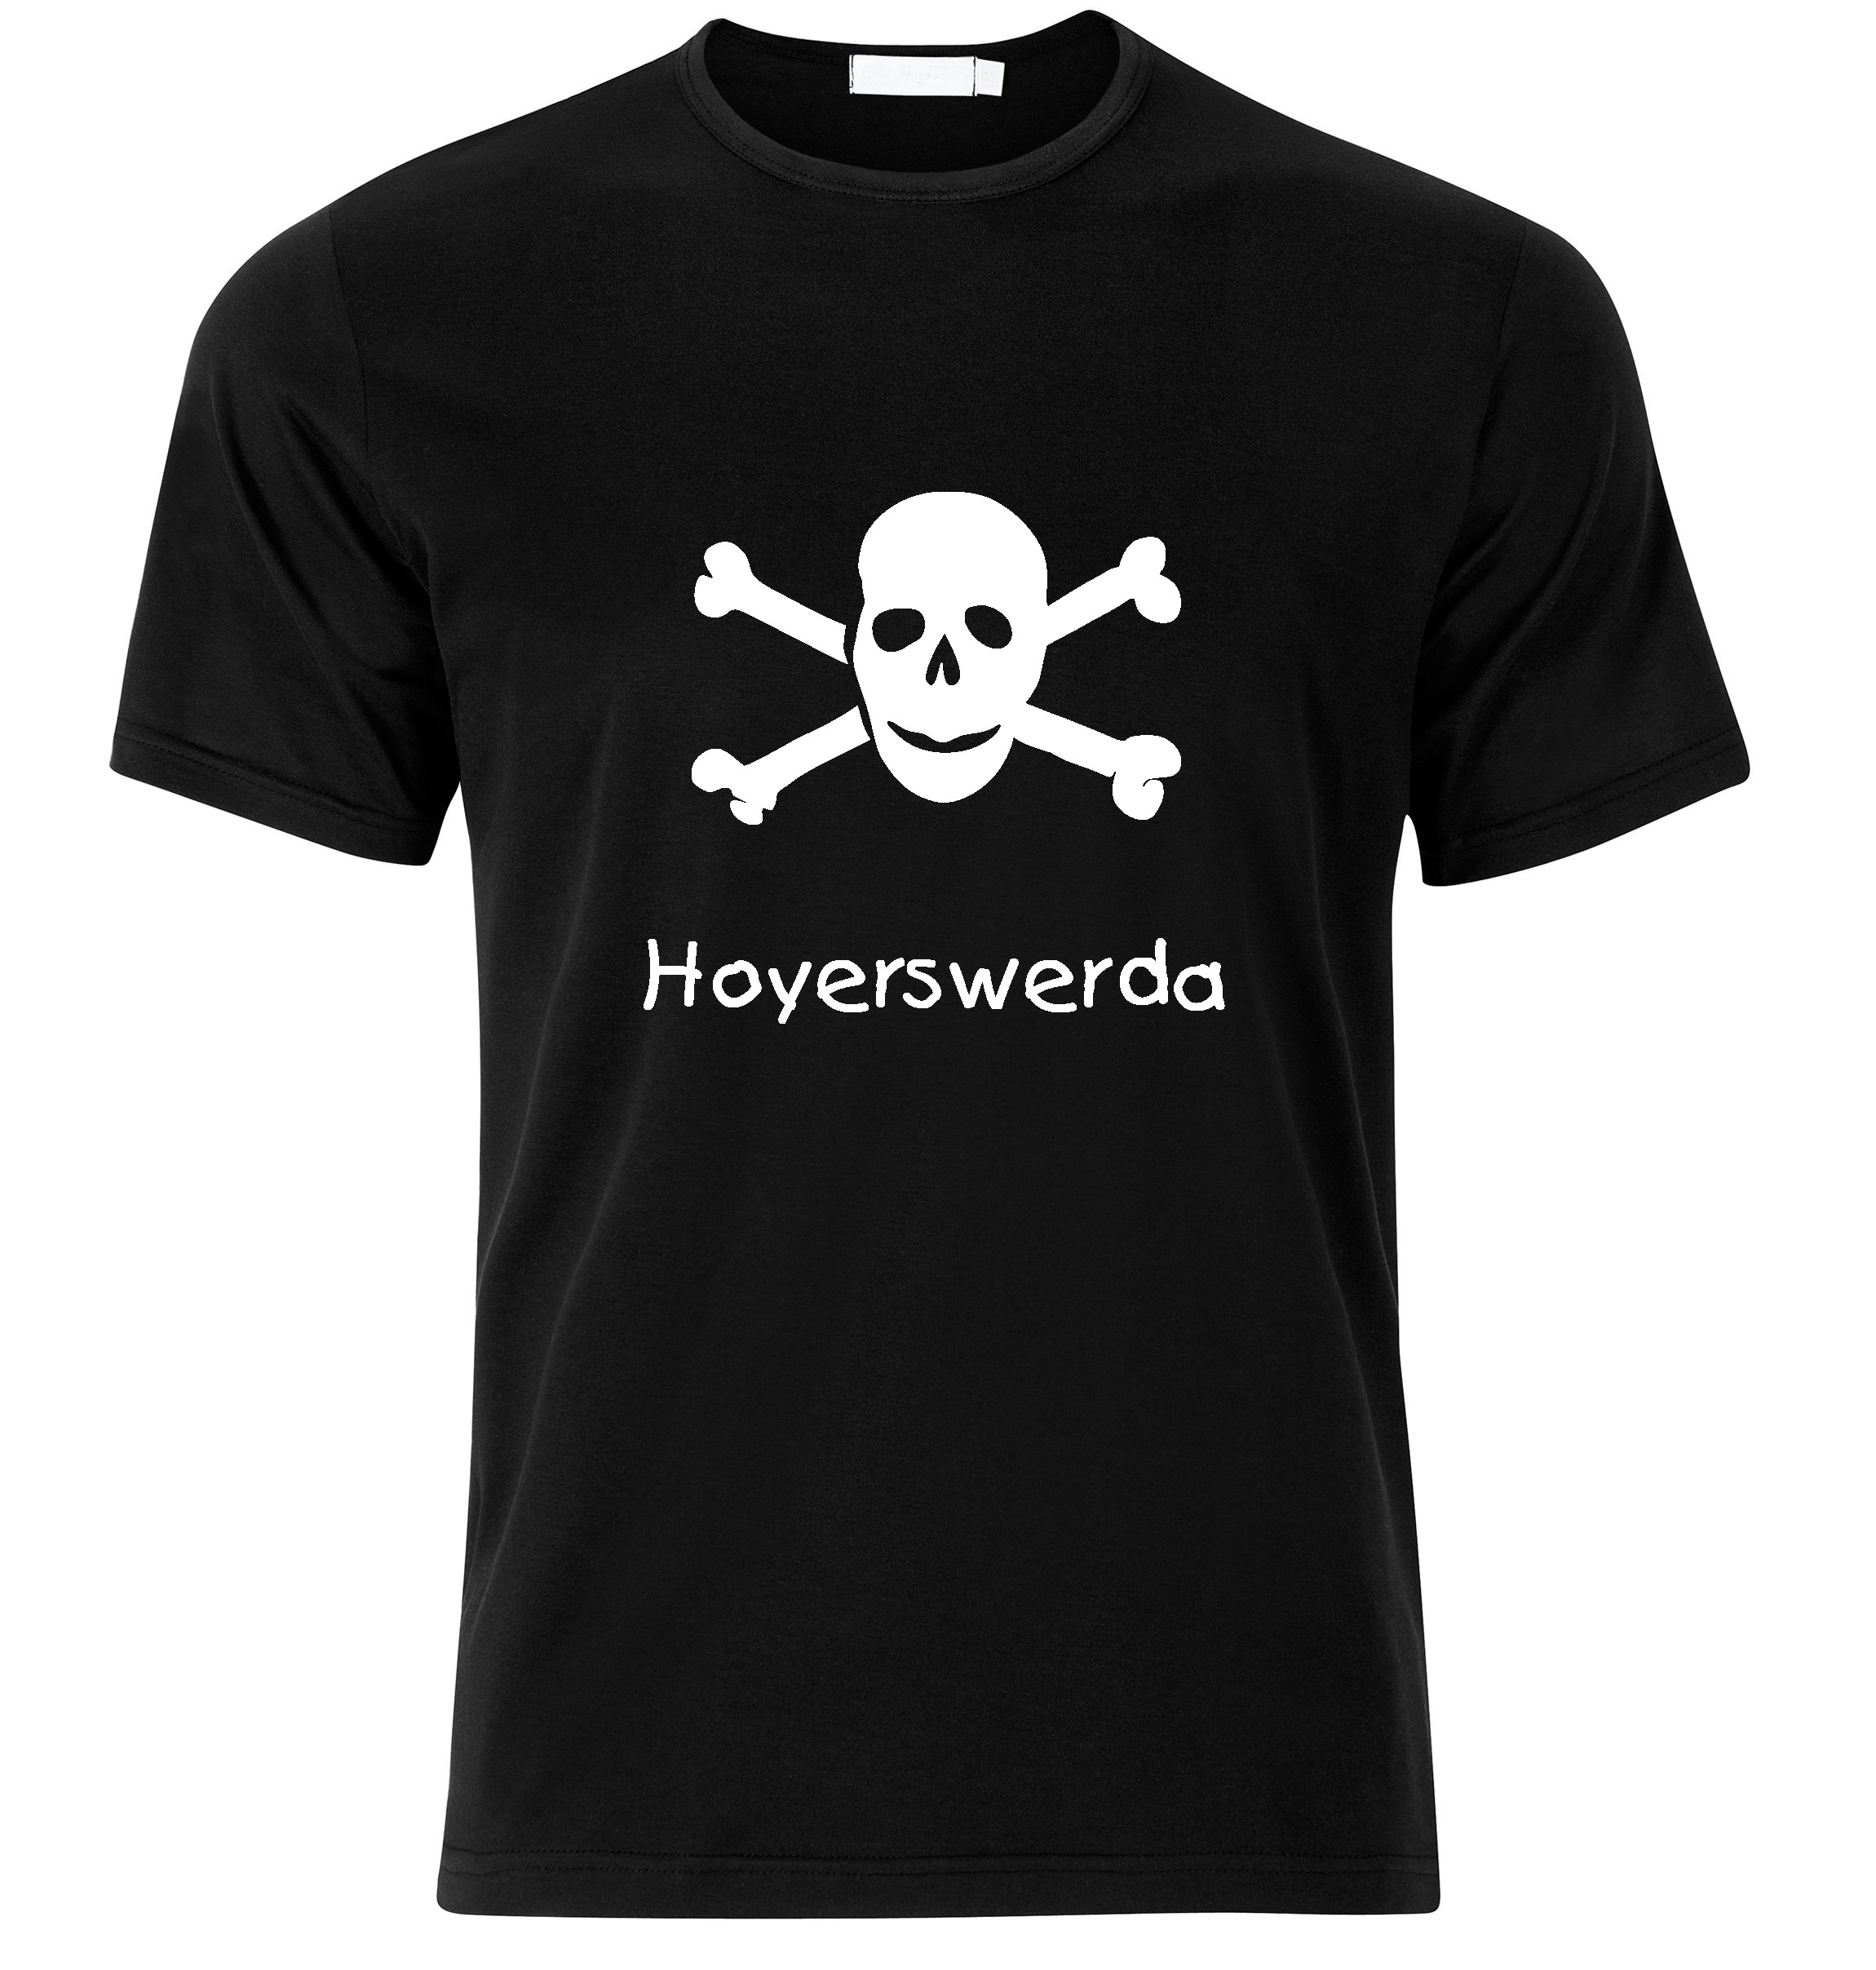 T-Shirt Hoyerswerda Jolly Roger, Totenkopf